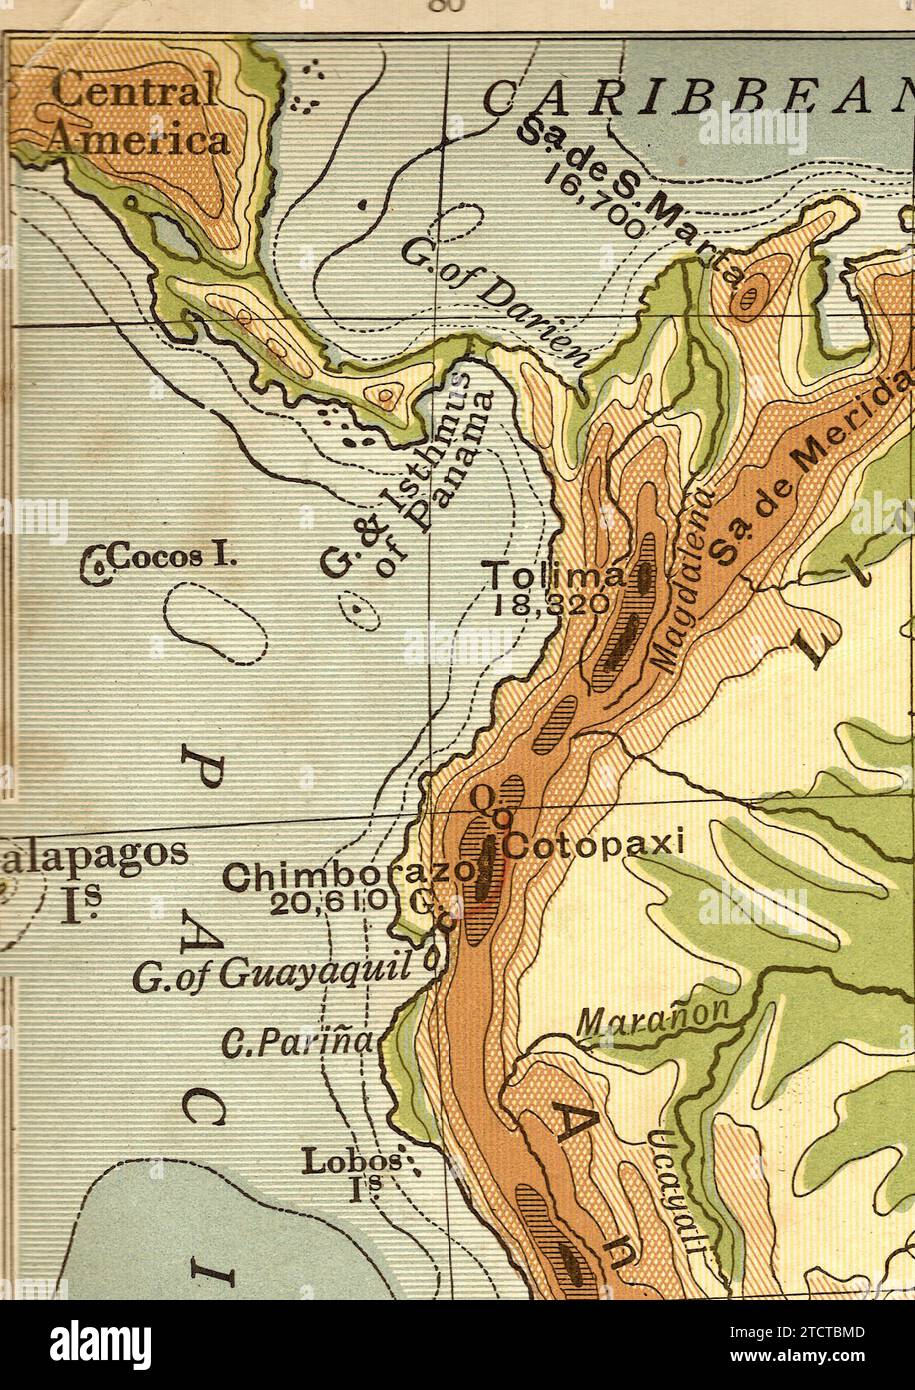 Una mappa geografica d'epoca/antica in Seppia dell'America centrale e meridionale. Foto Stock